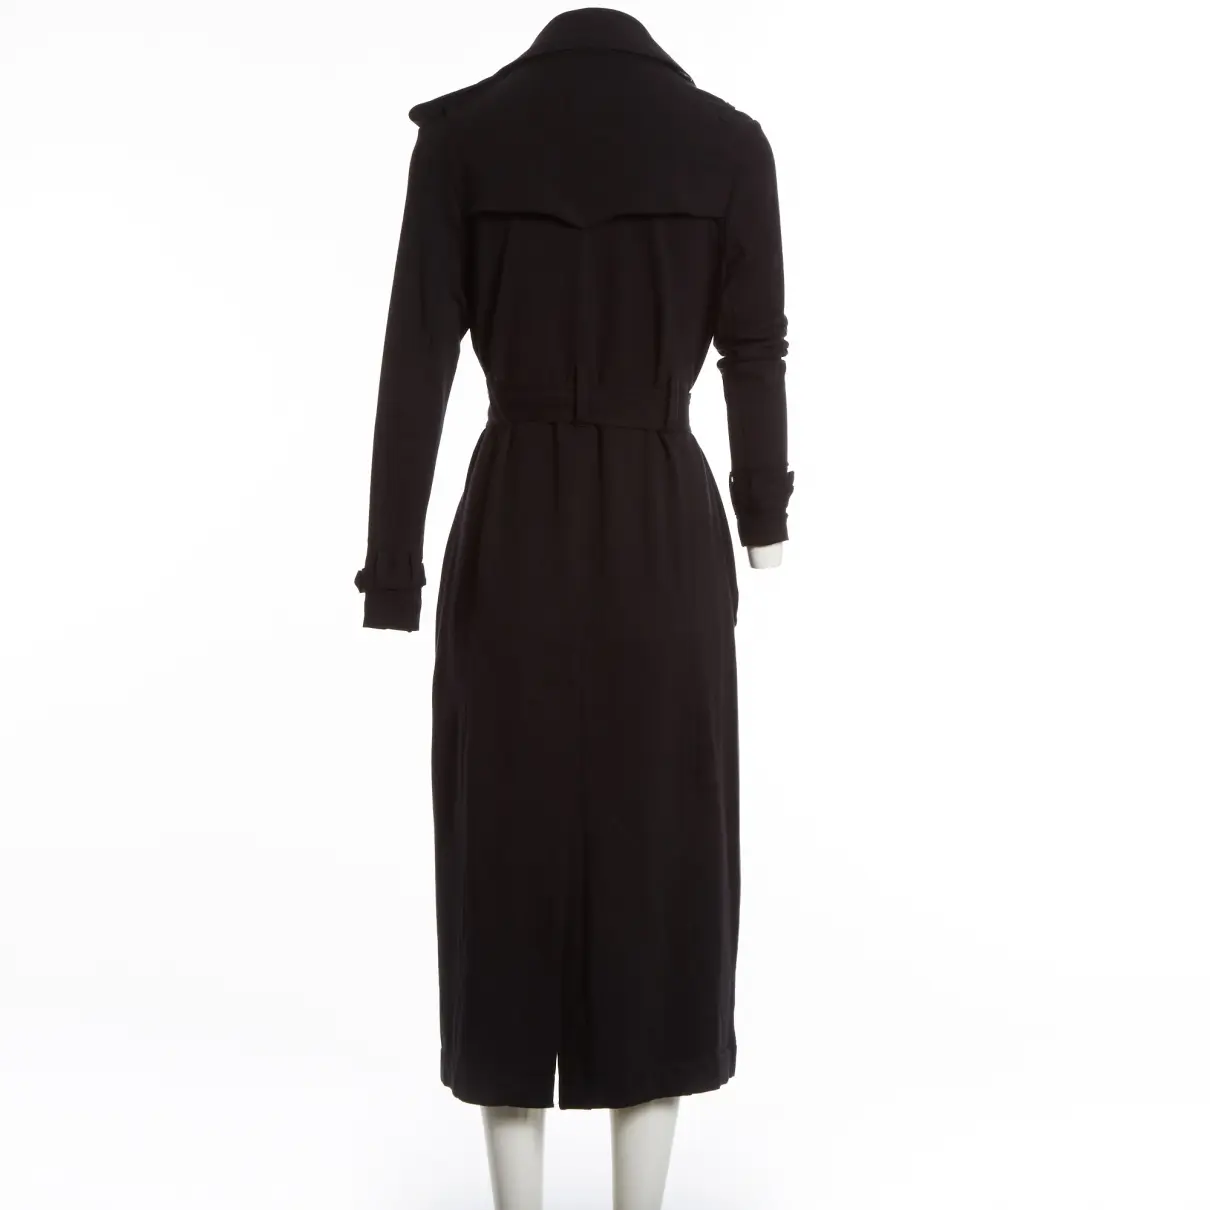 Buy Norma Kamali Coat online